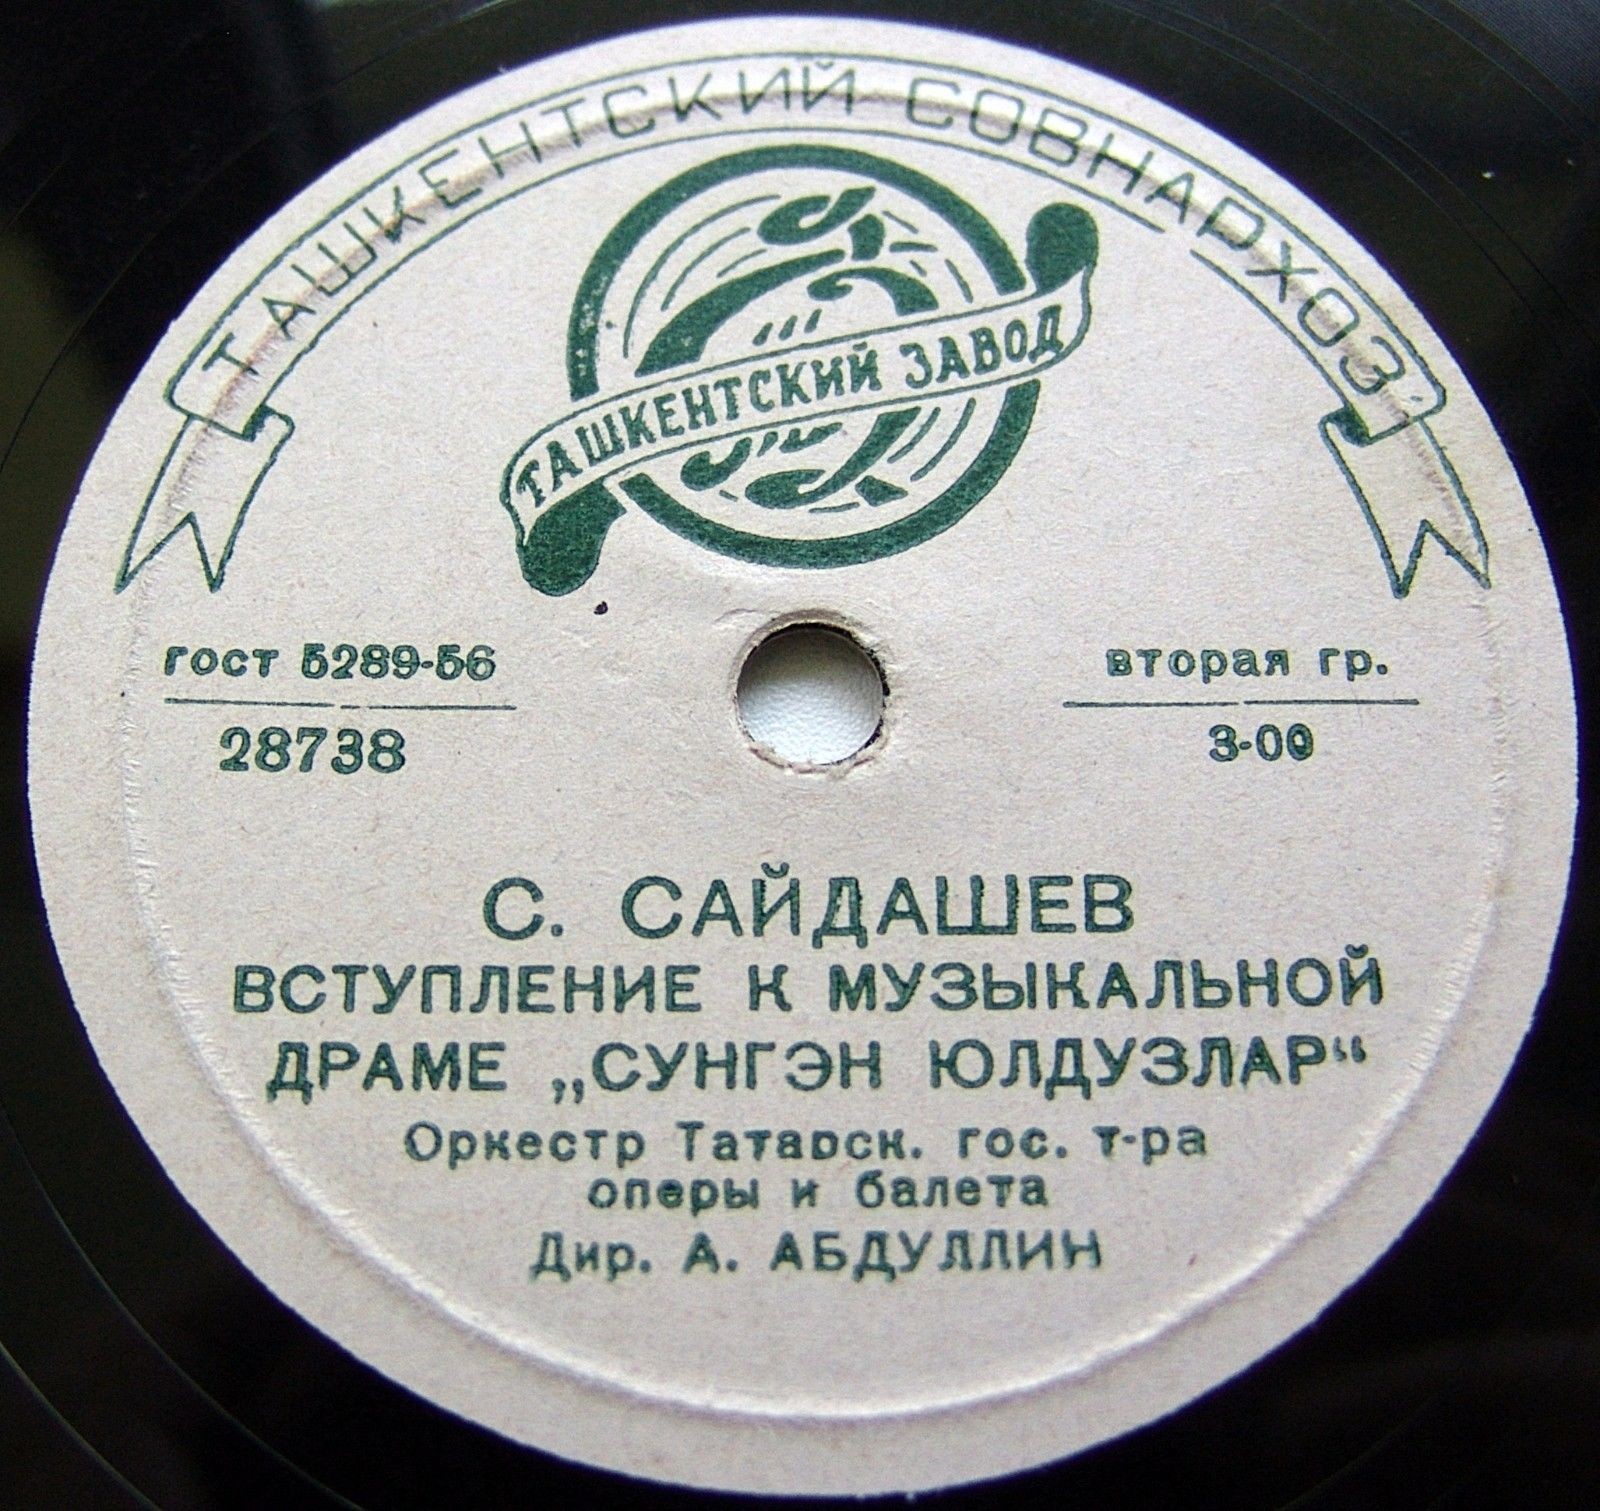 Татарская музыка